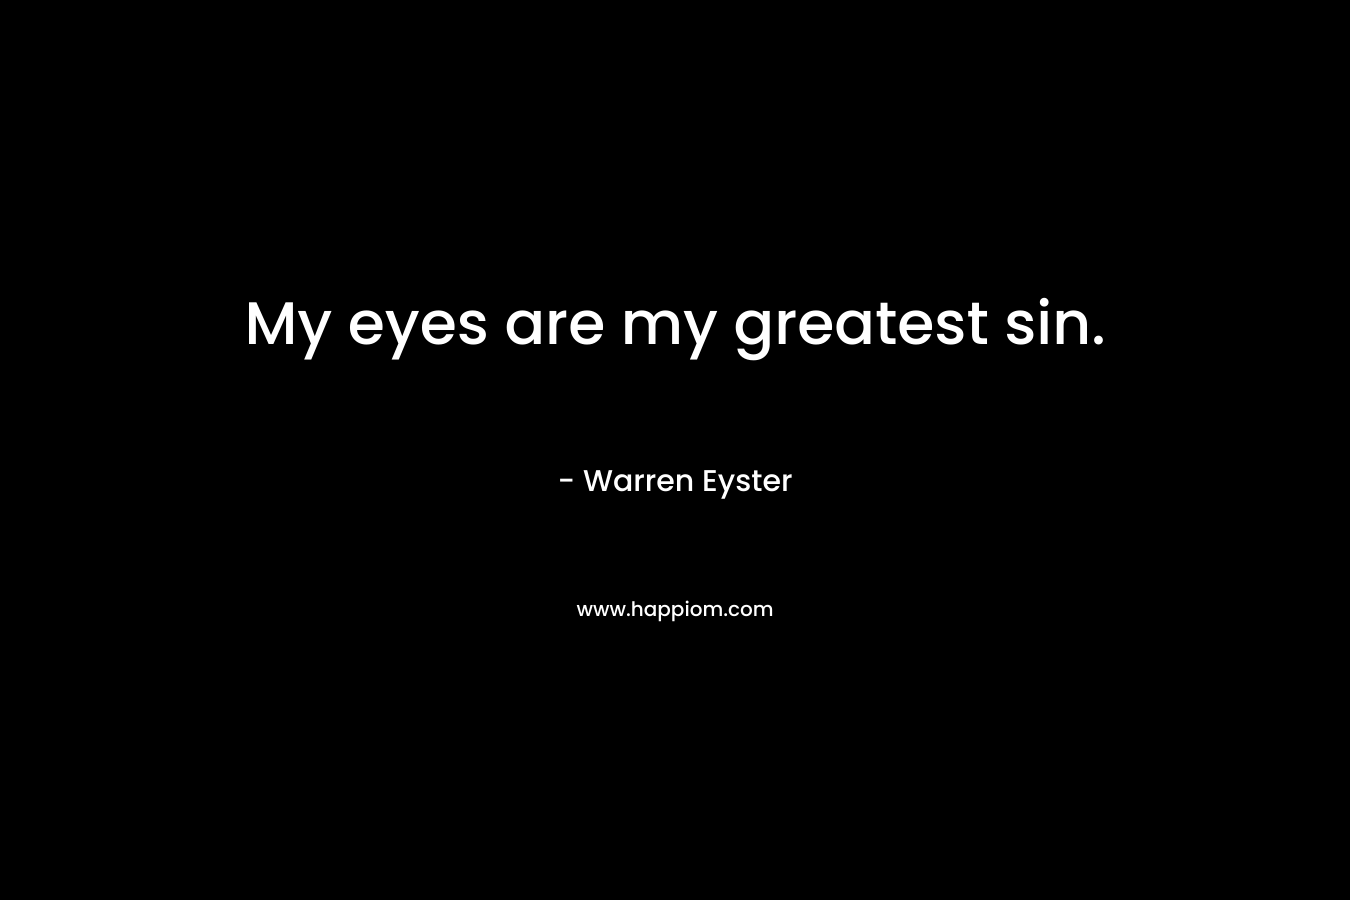 My eyes are my greatest sin. – Warren Eyster